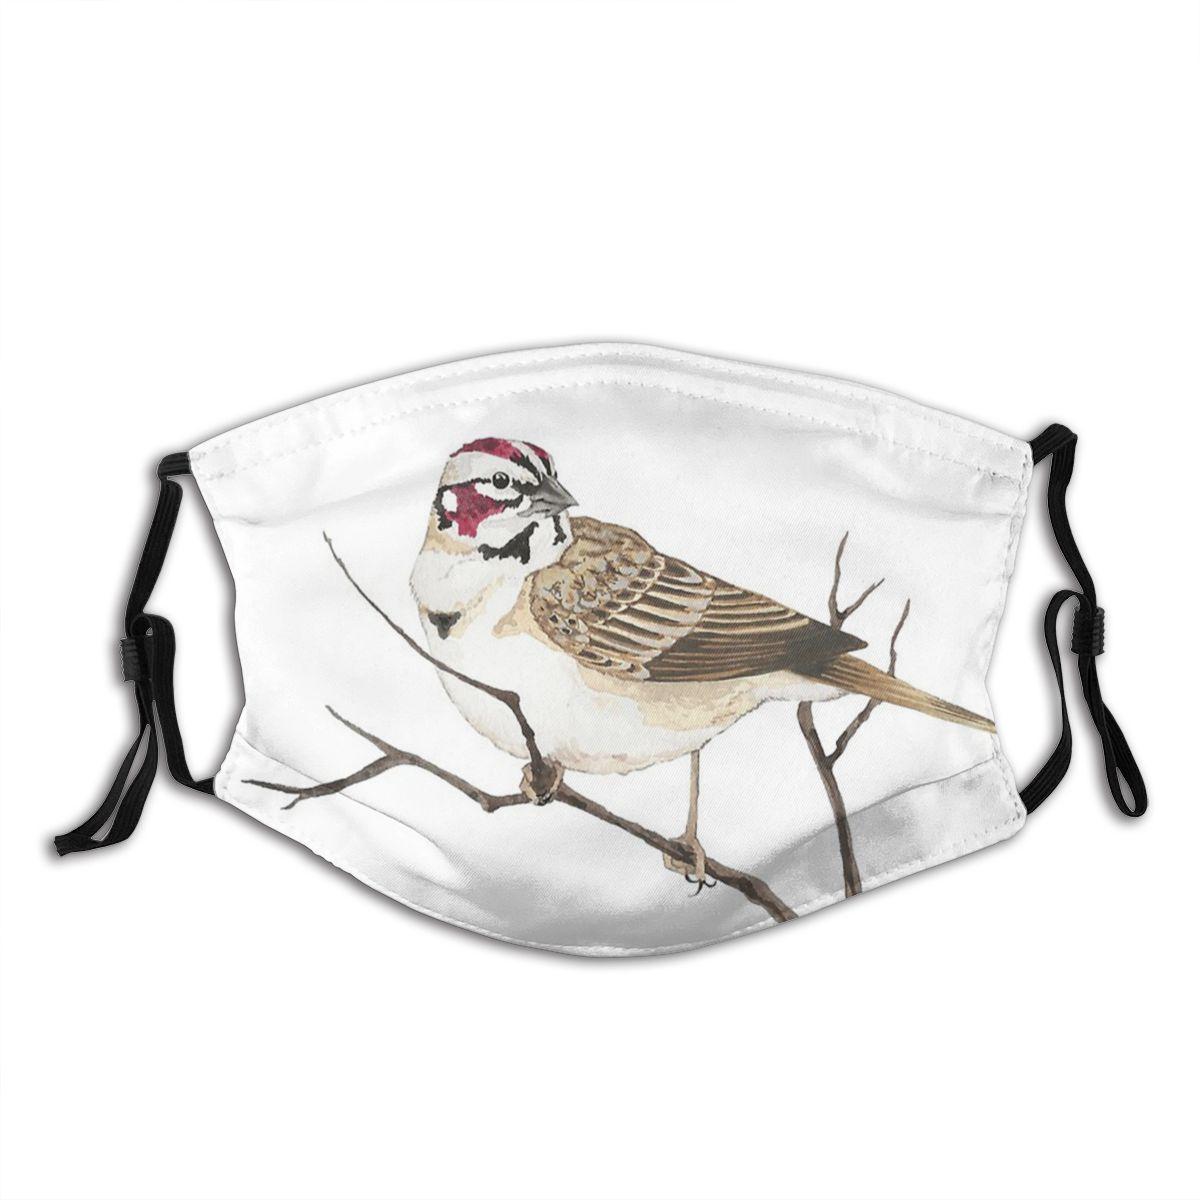 Изображение товара: Многоразовая Пыленепроницаемая маска для лица Lark Sparrow с принтом птиц, Пыленепроницаемая маска с фильтрами, защитный респиратор с ушной петлей